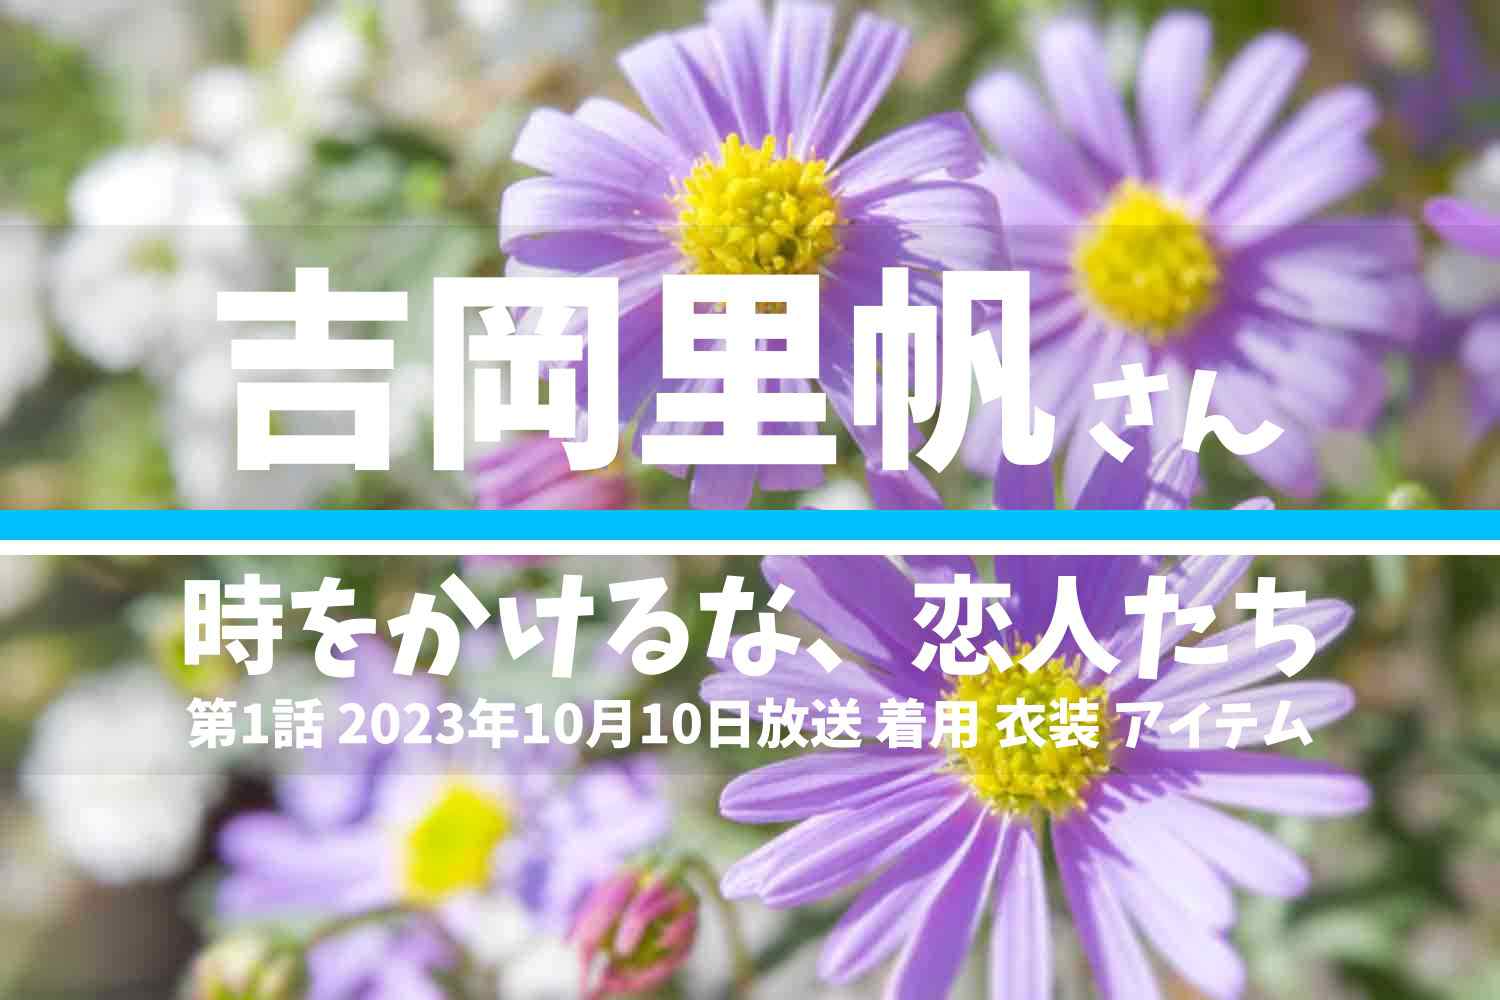 時をかけるな、恋人たち 吉岡里帆さん テレビドラマ 衣装 2023年10月10日放送